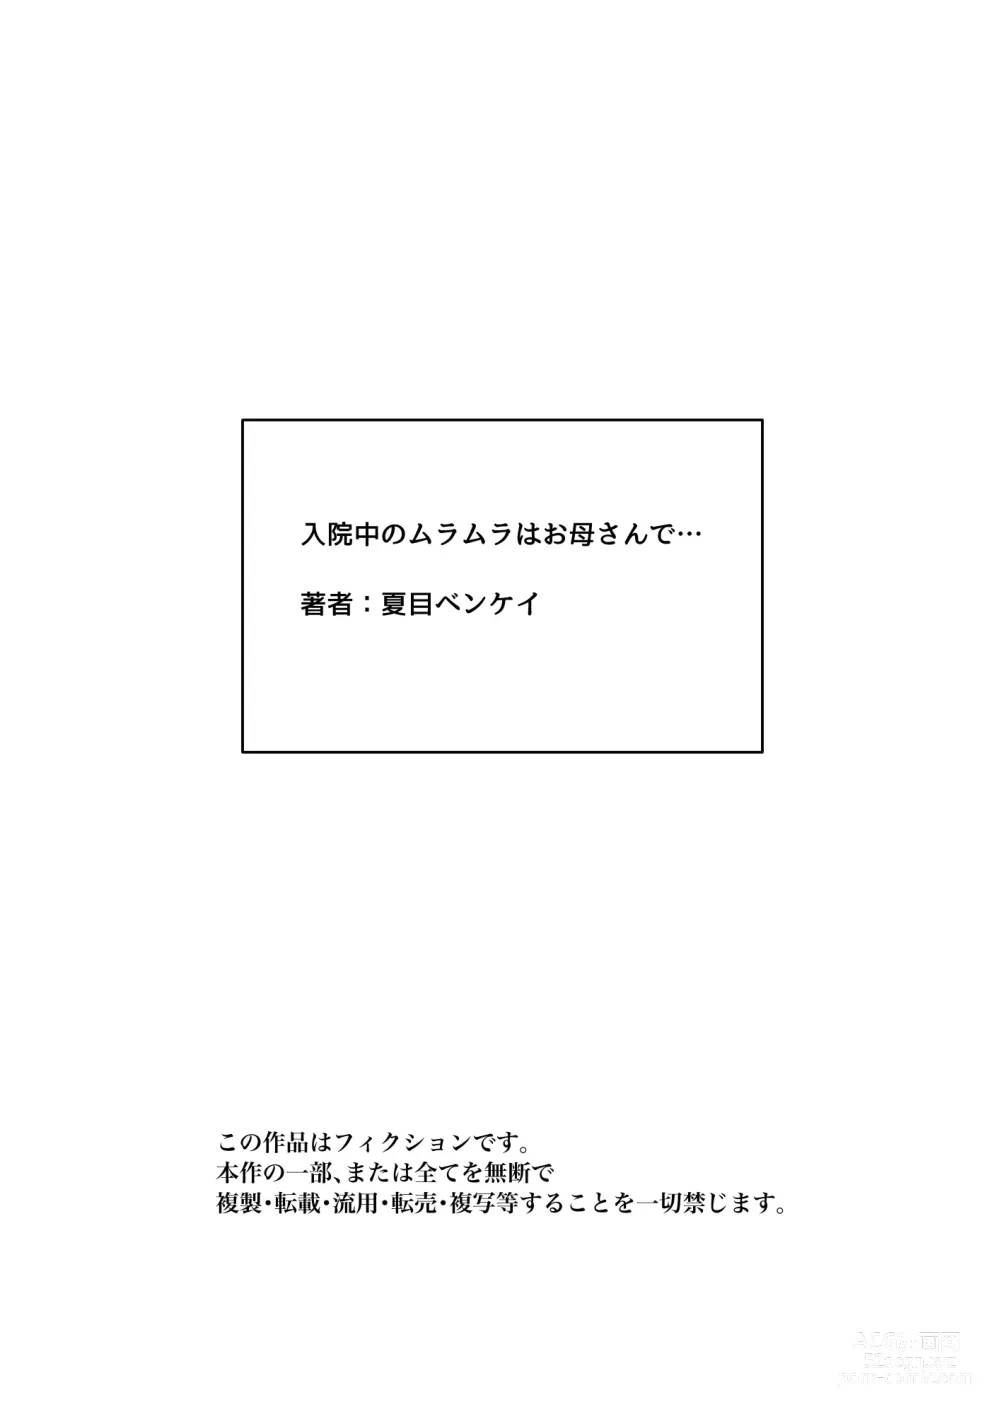 Page 127 of doujinshi Nyuuin-chuu no Muramura wa  Okaa-san de...